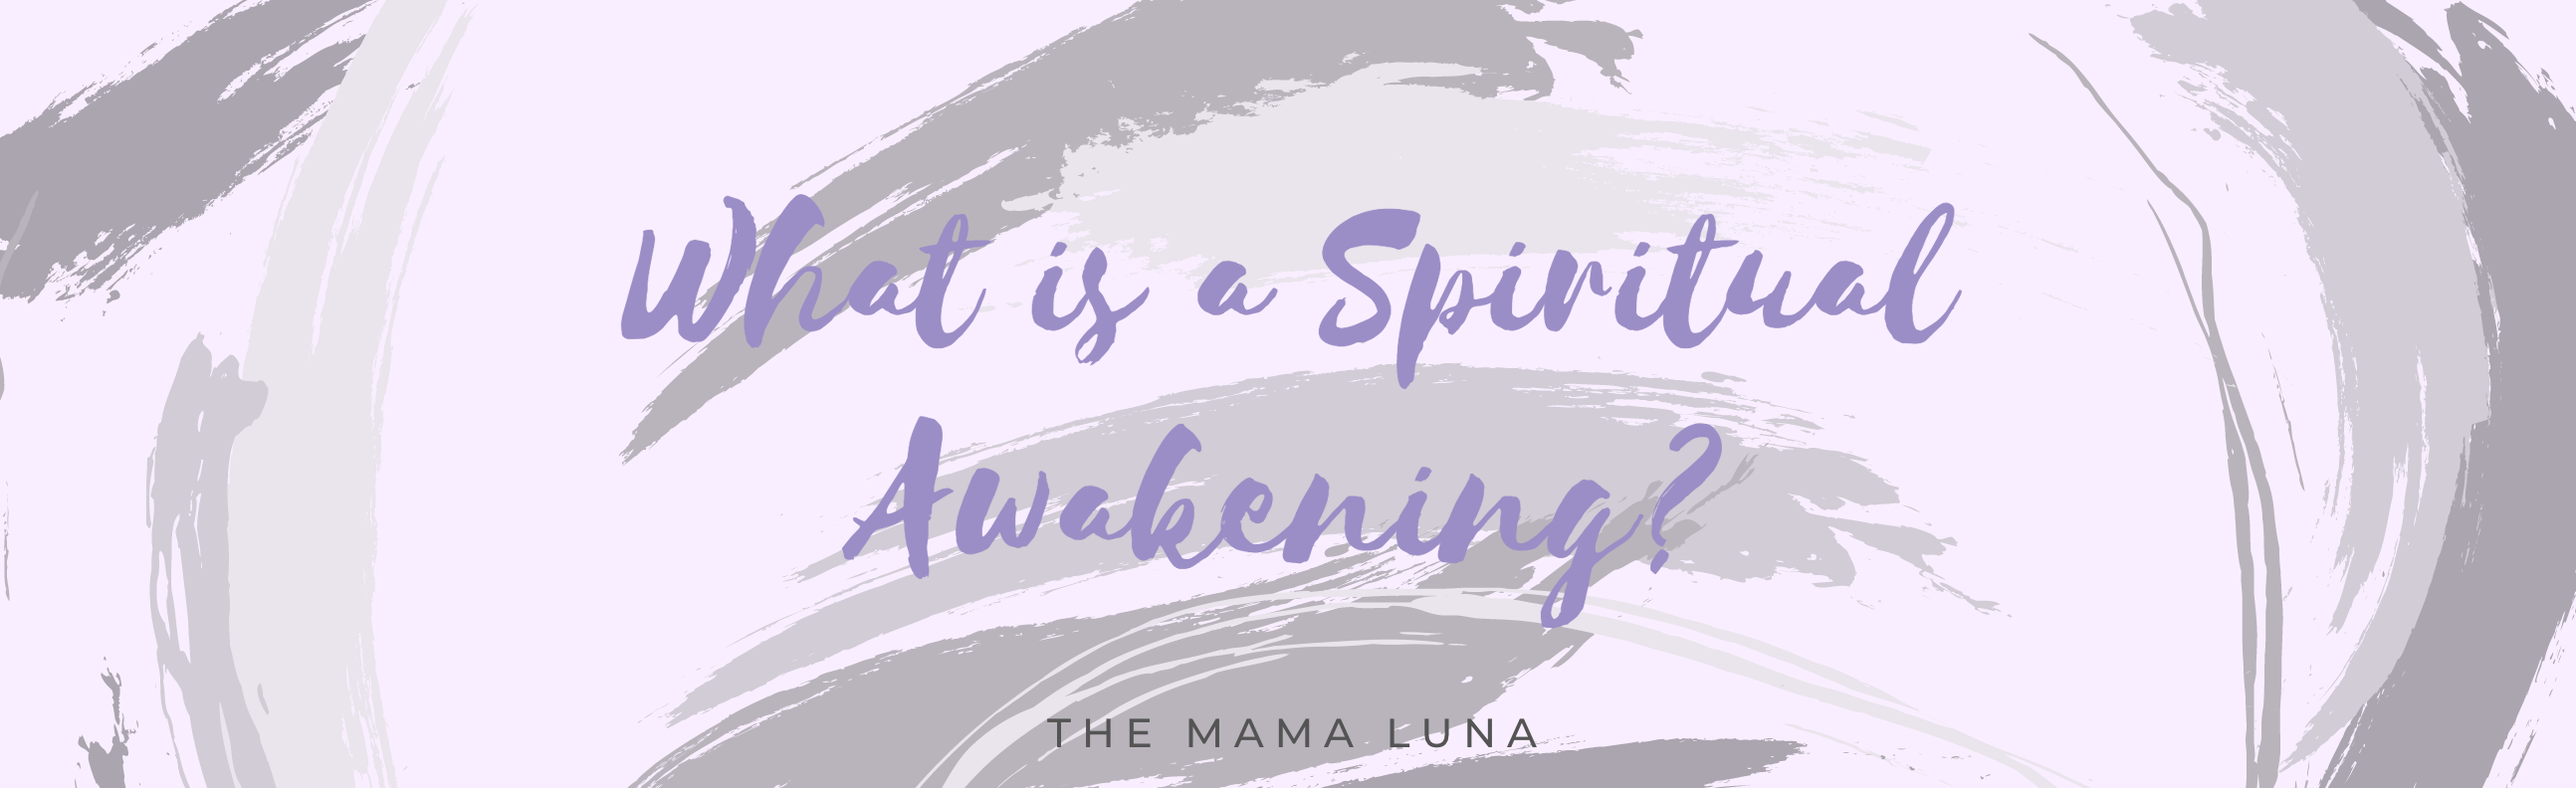 What is a Spiritual Awakening?  Spiritual Awakening Meaning